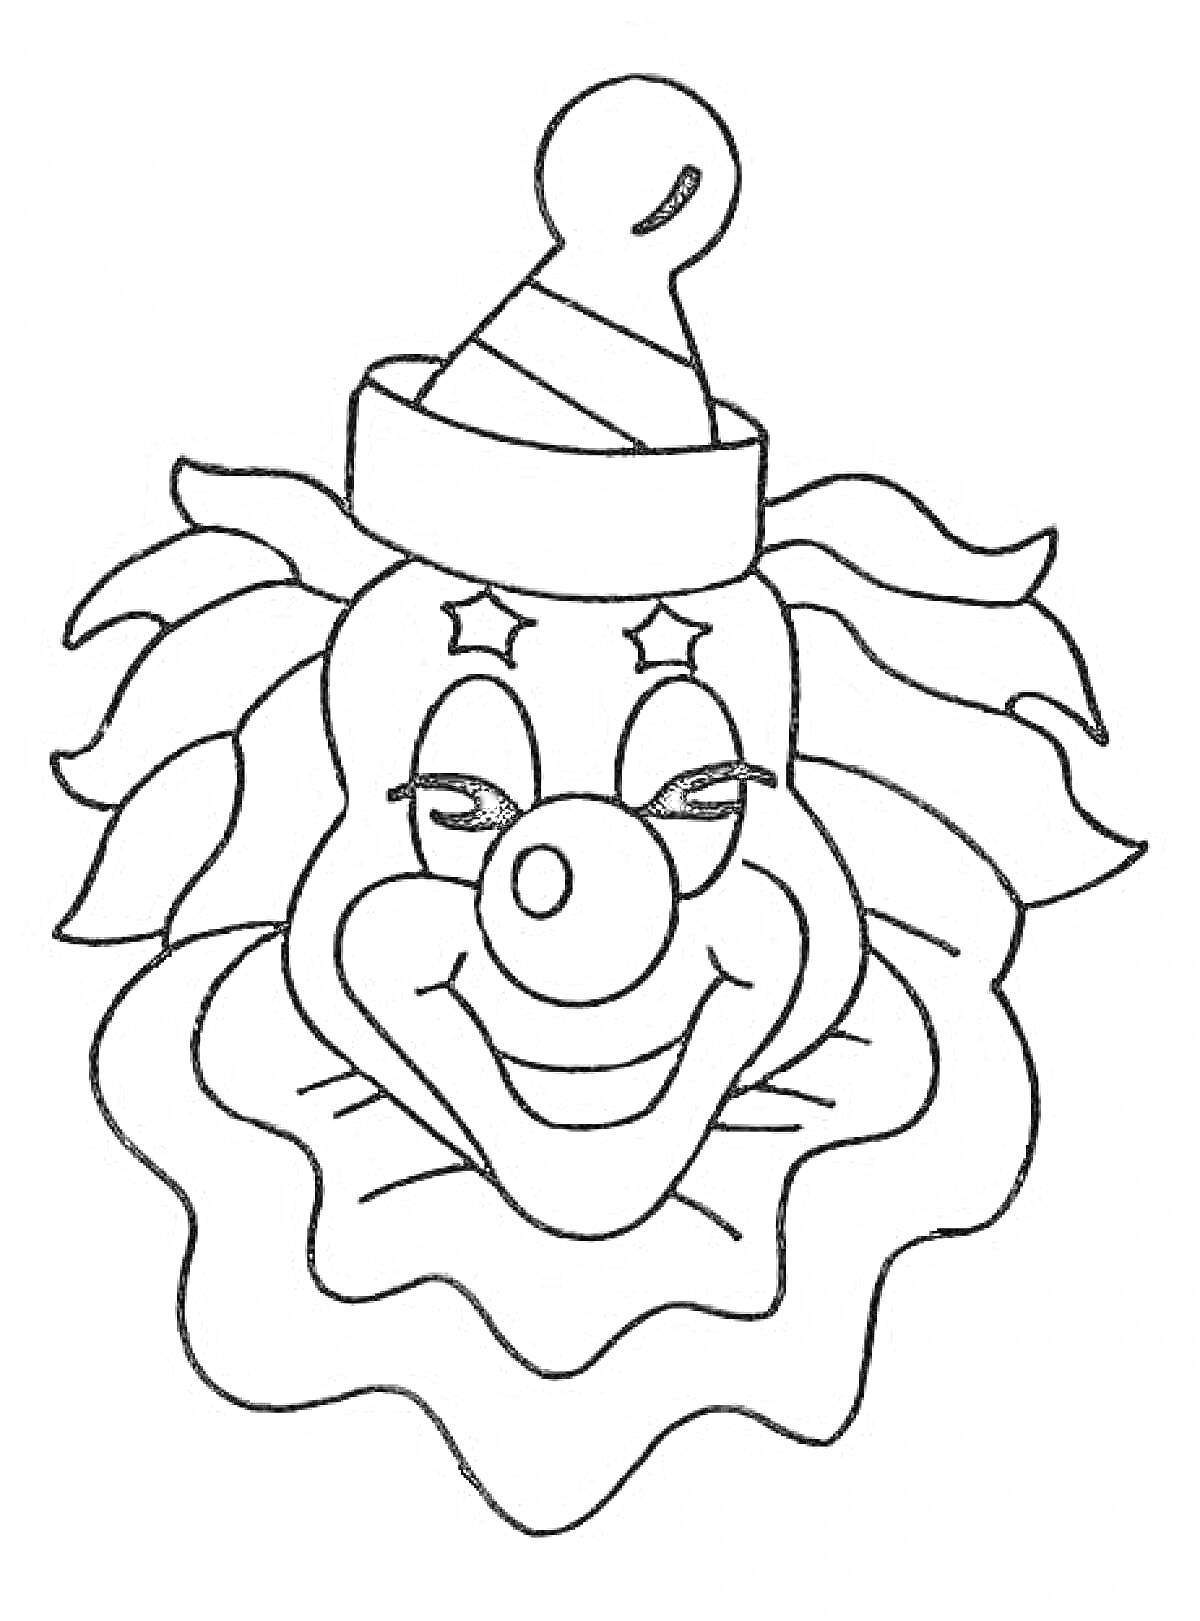 Раскраска Клоун в шапке с колпачком, звездочки вокруг глаз, большая улыбка